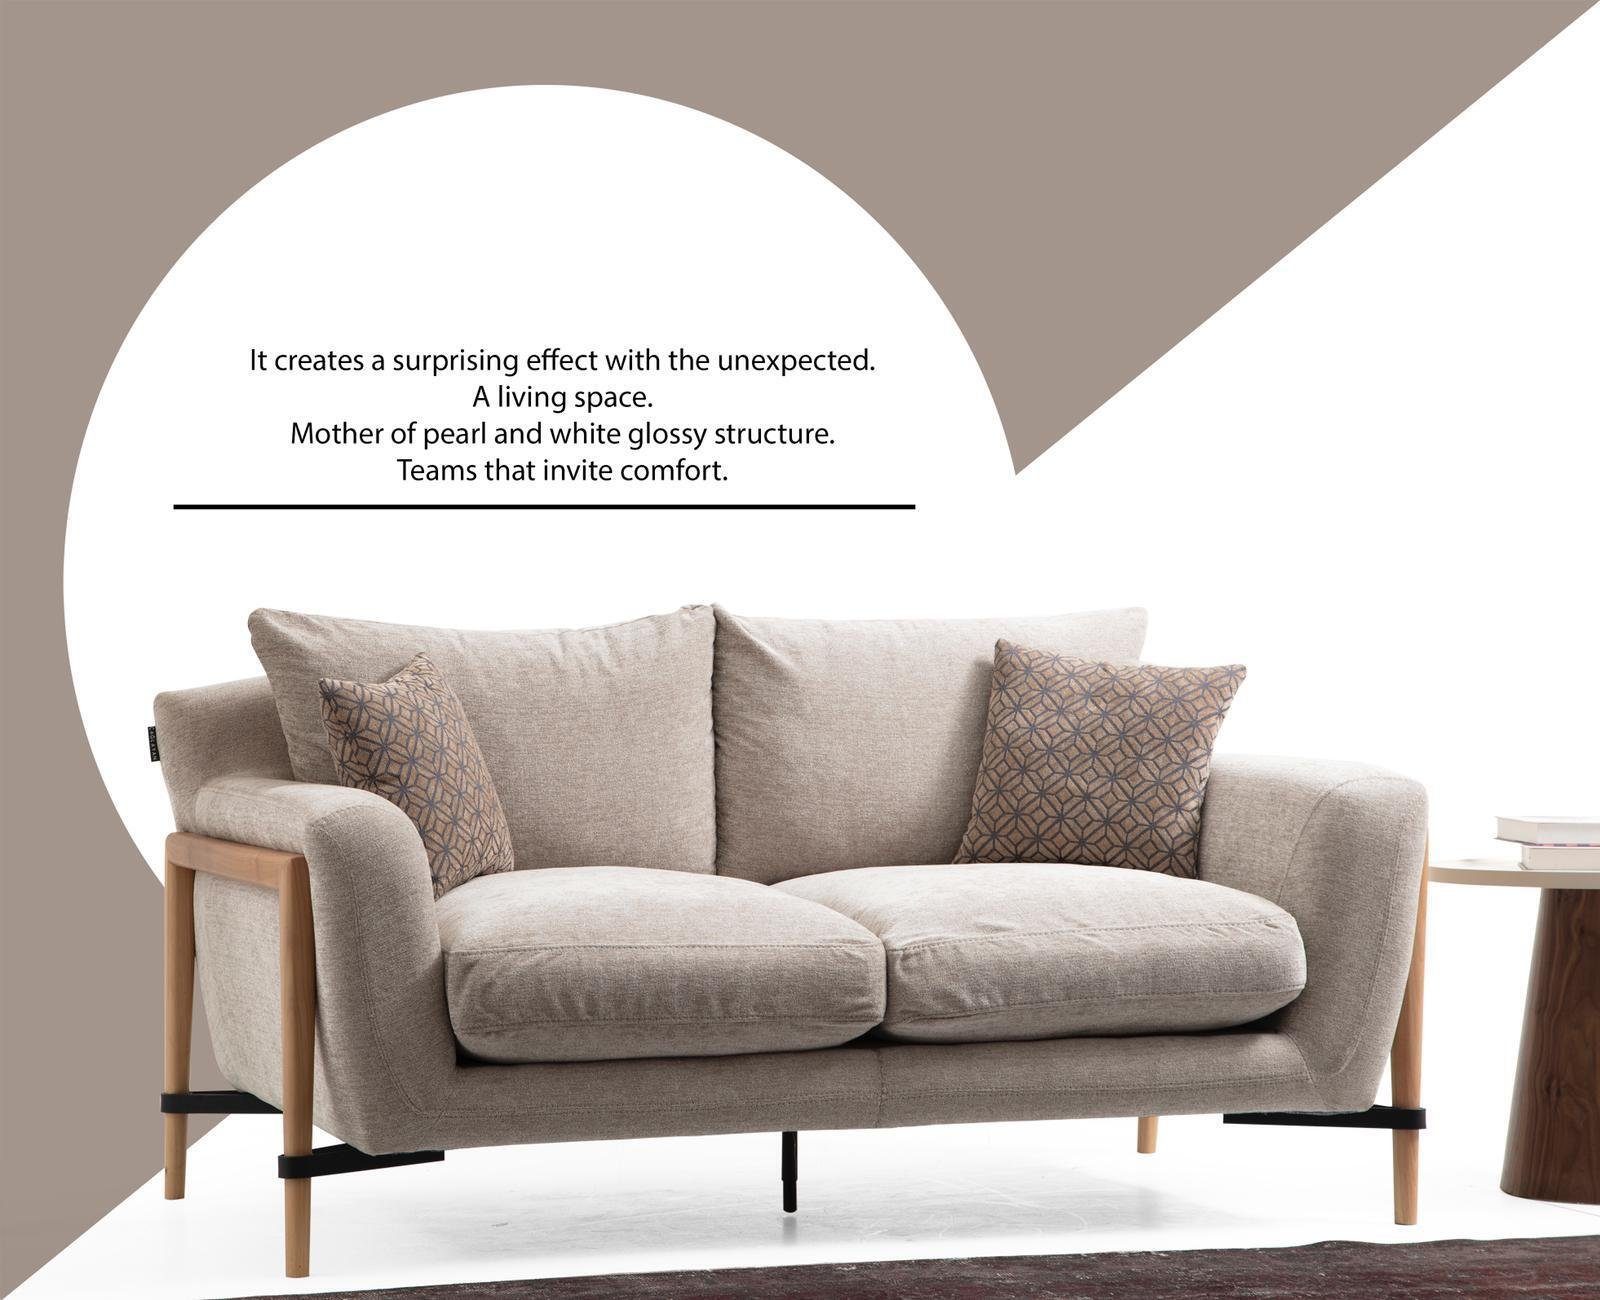 JVmoebel 2-Sitzer Wohnzimmer Zweisitzer Sofa 2 Sitzer Stoff Sofas Modern Design Grau, 1 Teile, Made in Europa